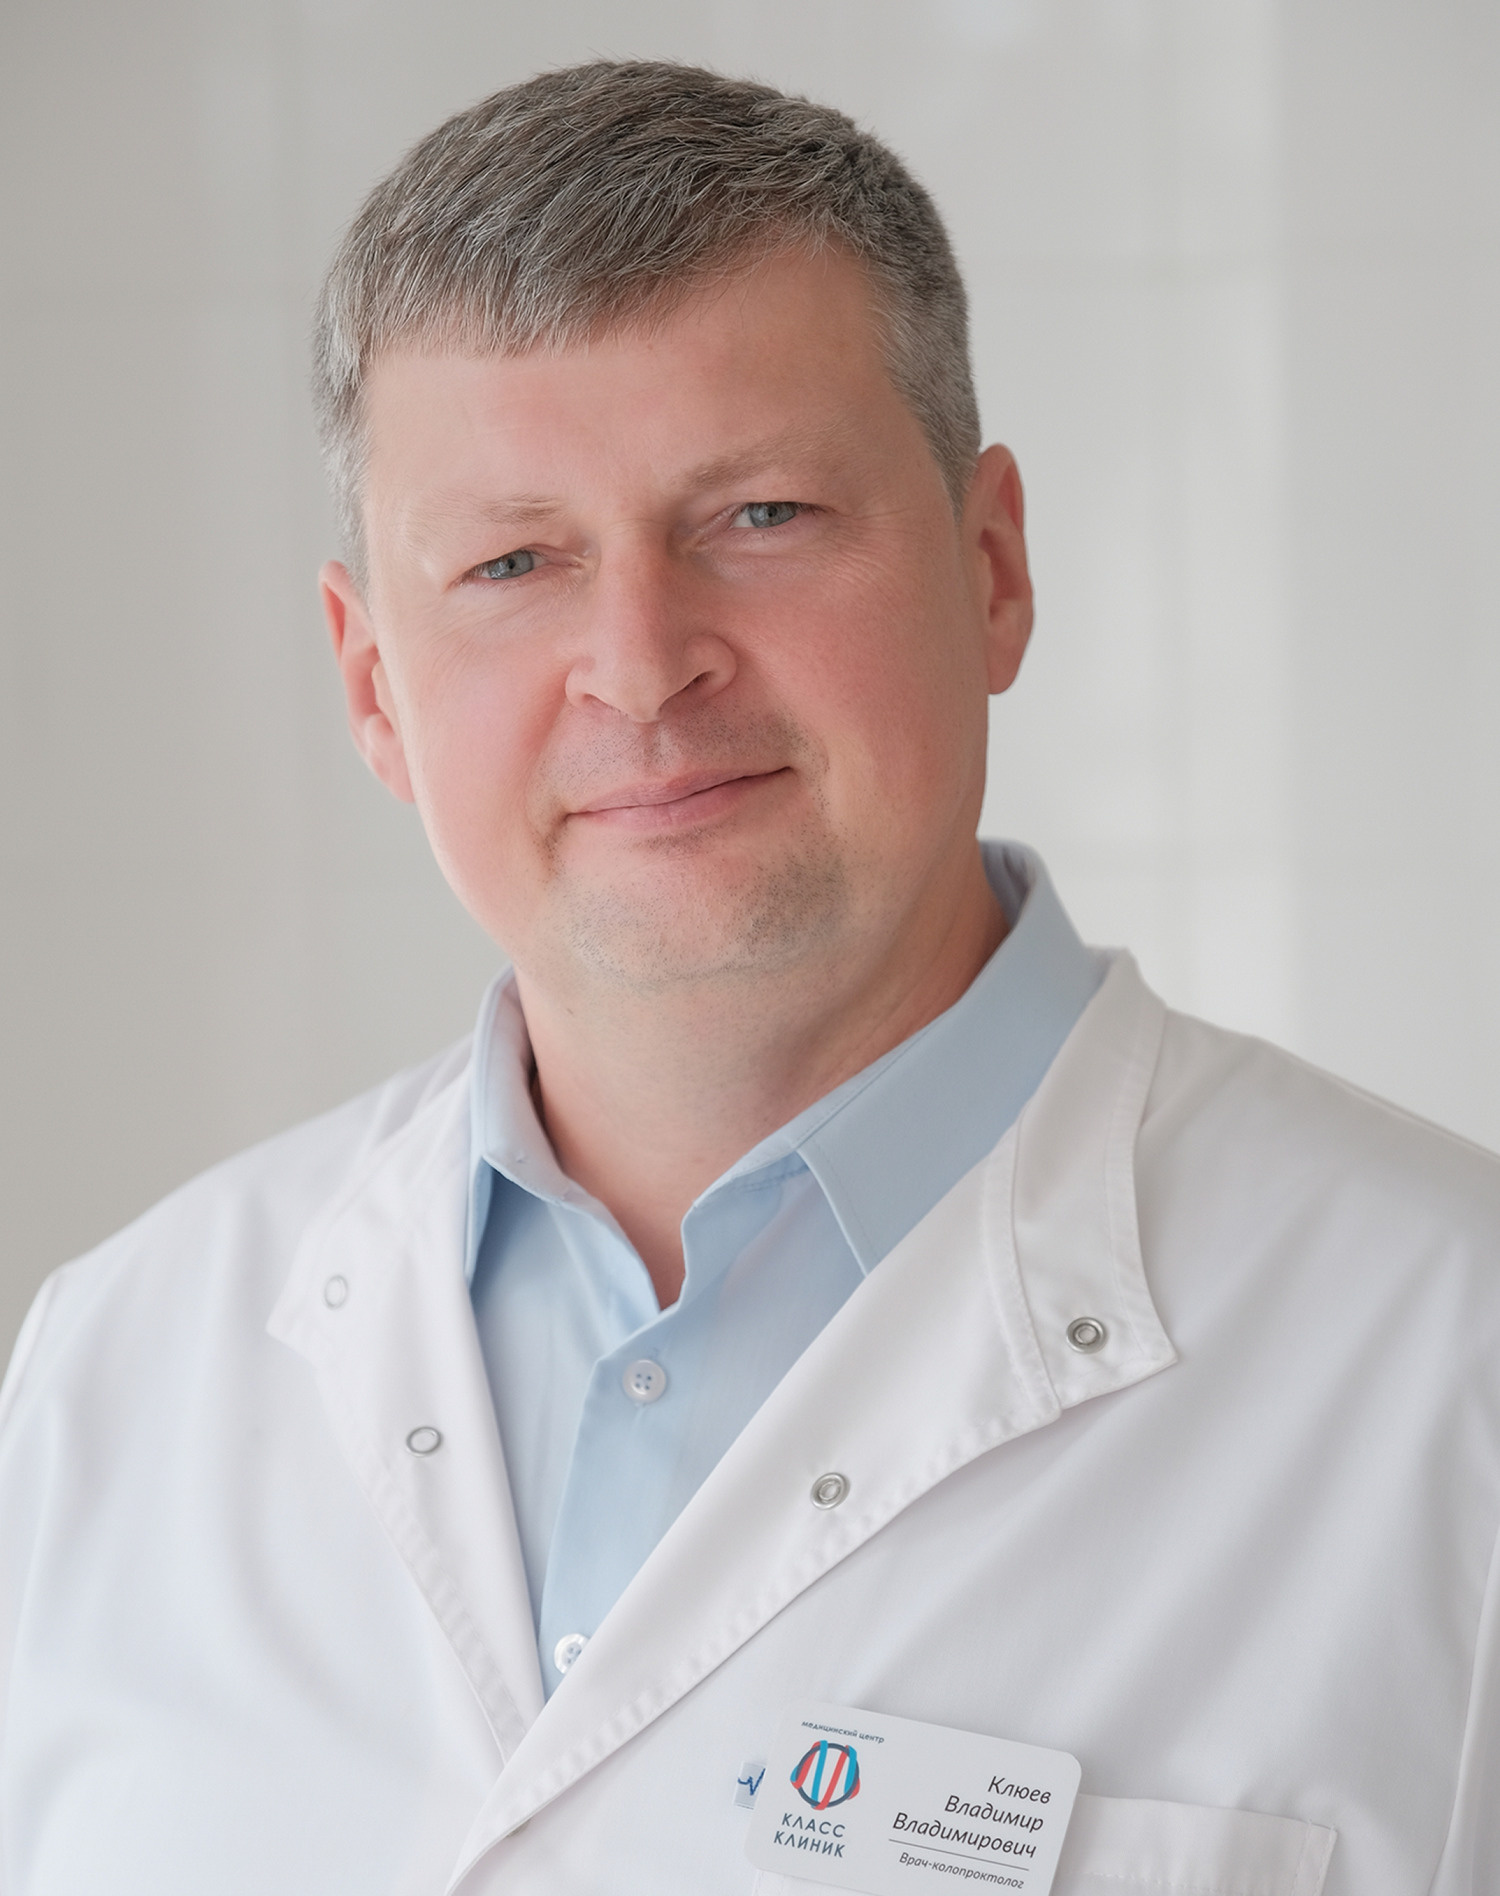 Владимир Владимирович Клюев, проктолог медицинского центра «Класс Клиник», врач высшей категории, клинический опыт 22 года